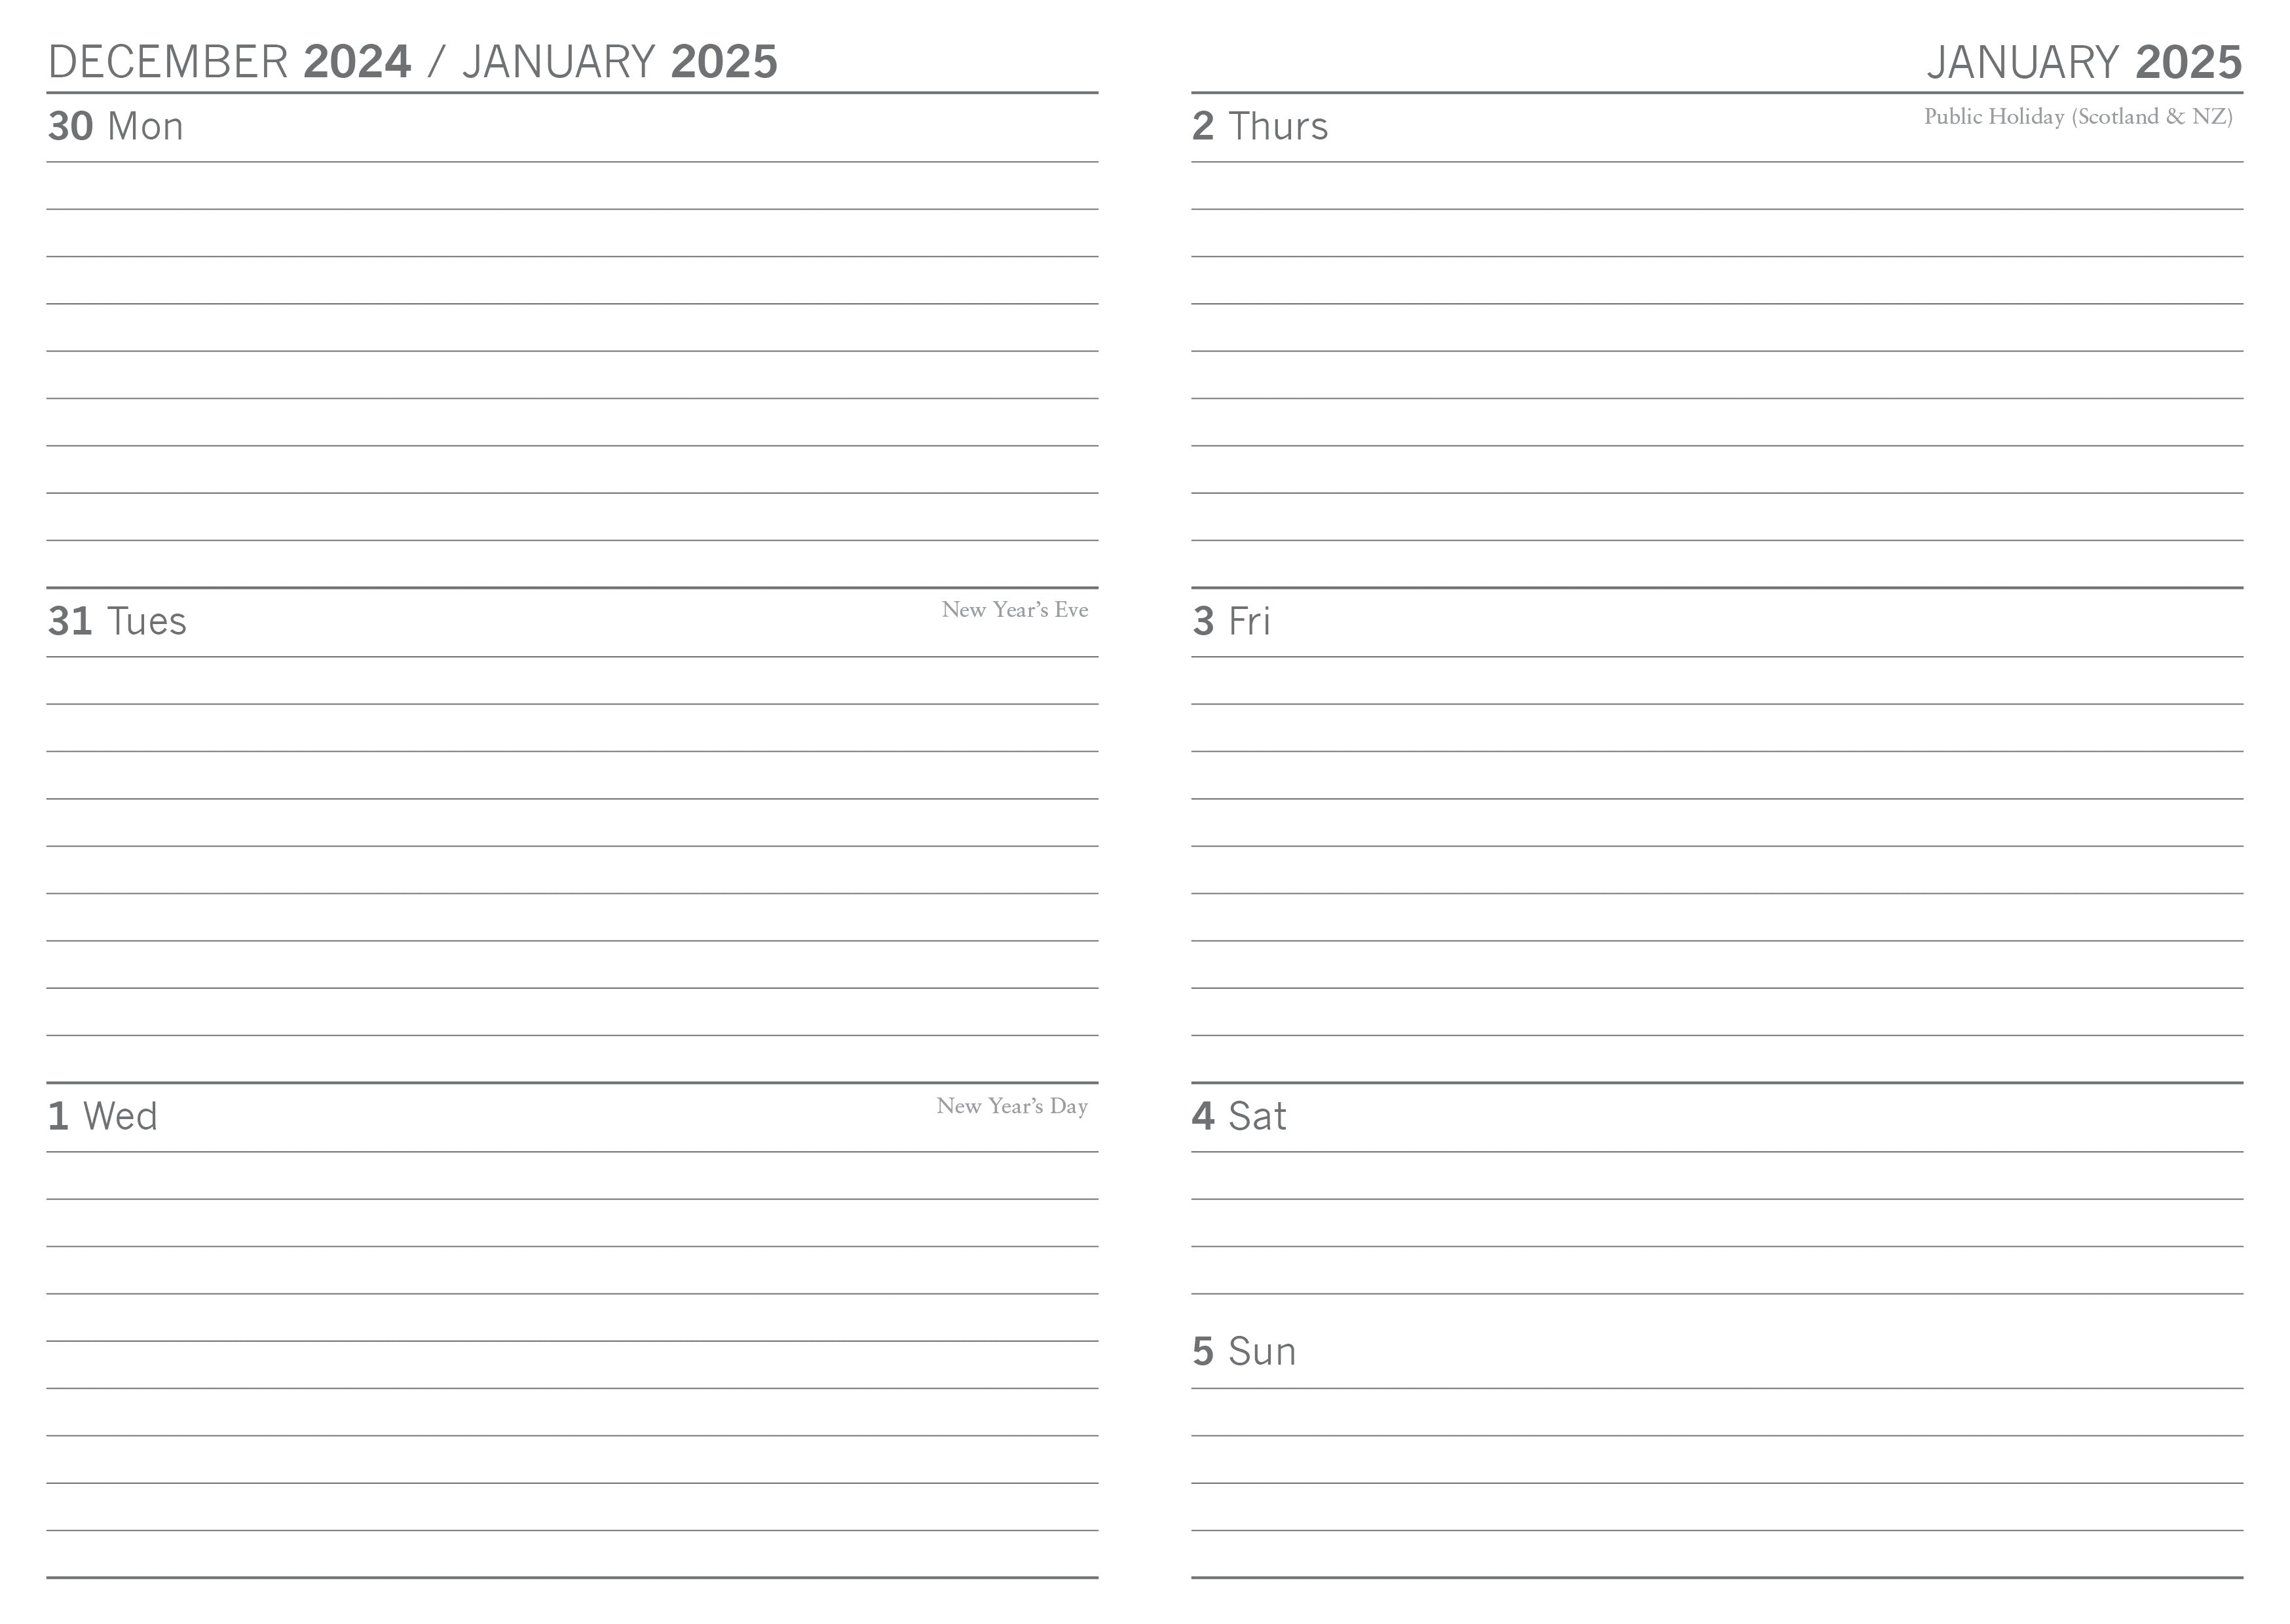 2025 Camper Vans - Weekly Diary/Planner